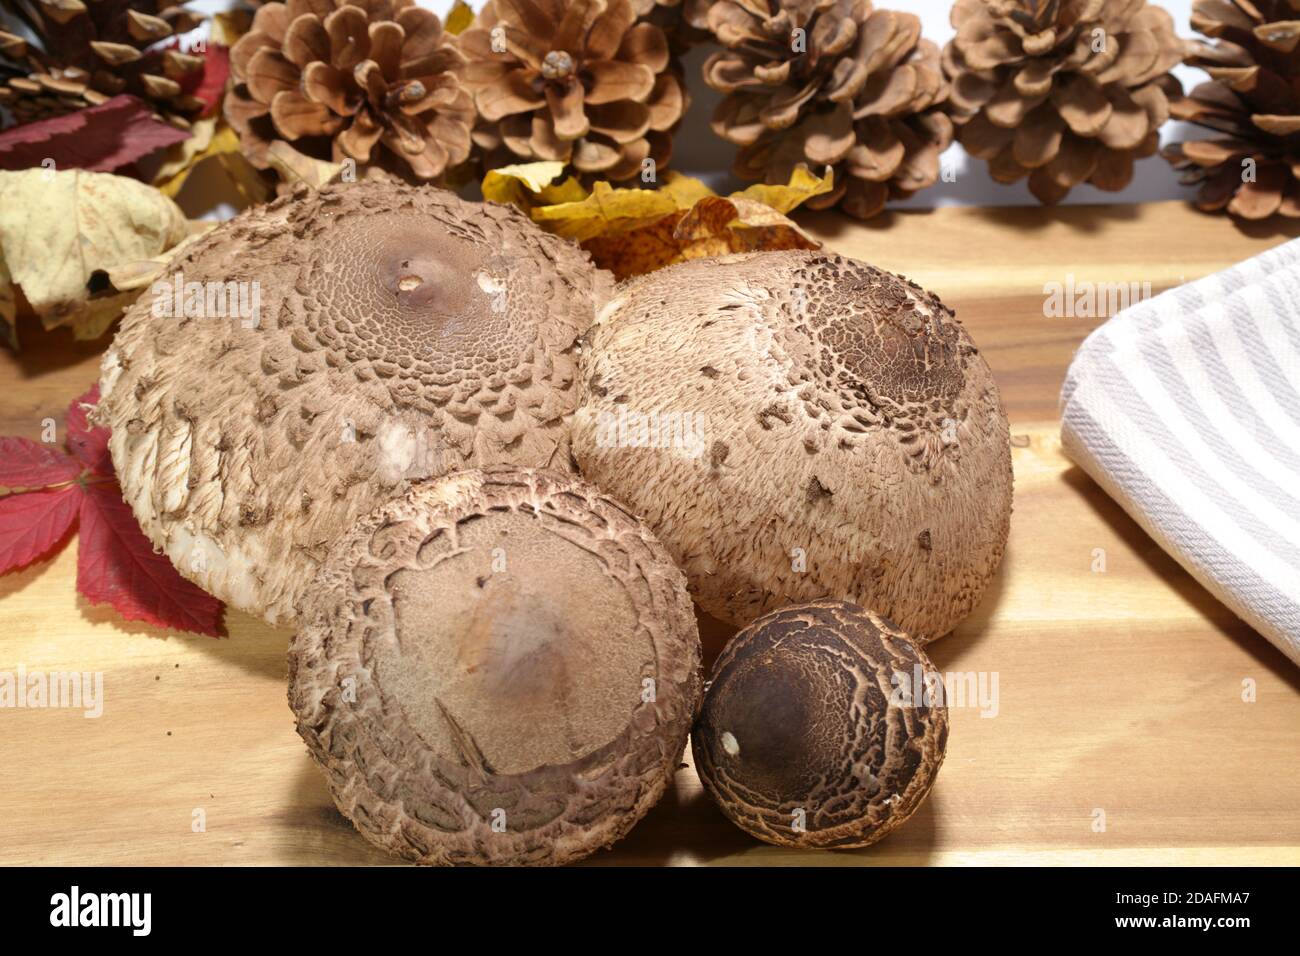 Funghi parasoli ( Macrolepiota procera ) sul tavolo da cucina preparato per il taglio, questa specie è meglio per la tostatura, davvero deliziosa, yummy Foto Stock